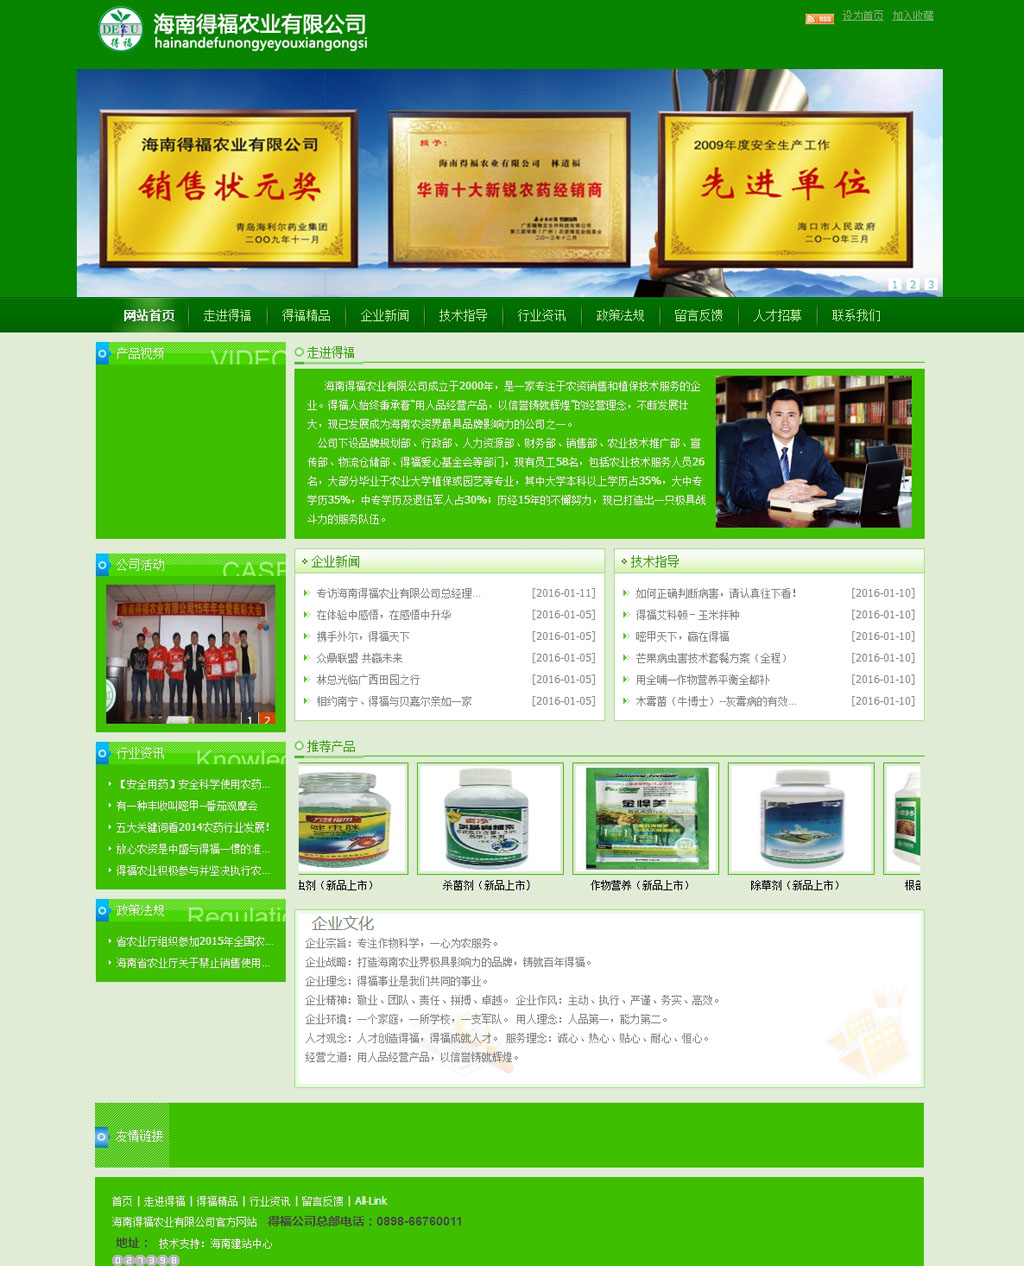 海南得福农业有限公司官方网站 --- 网站首页.jpg